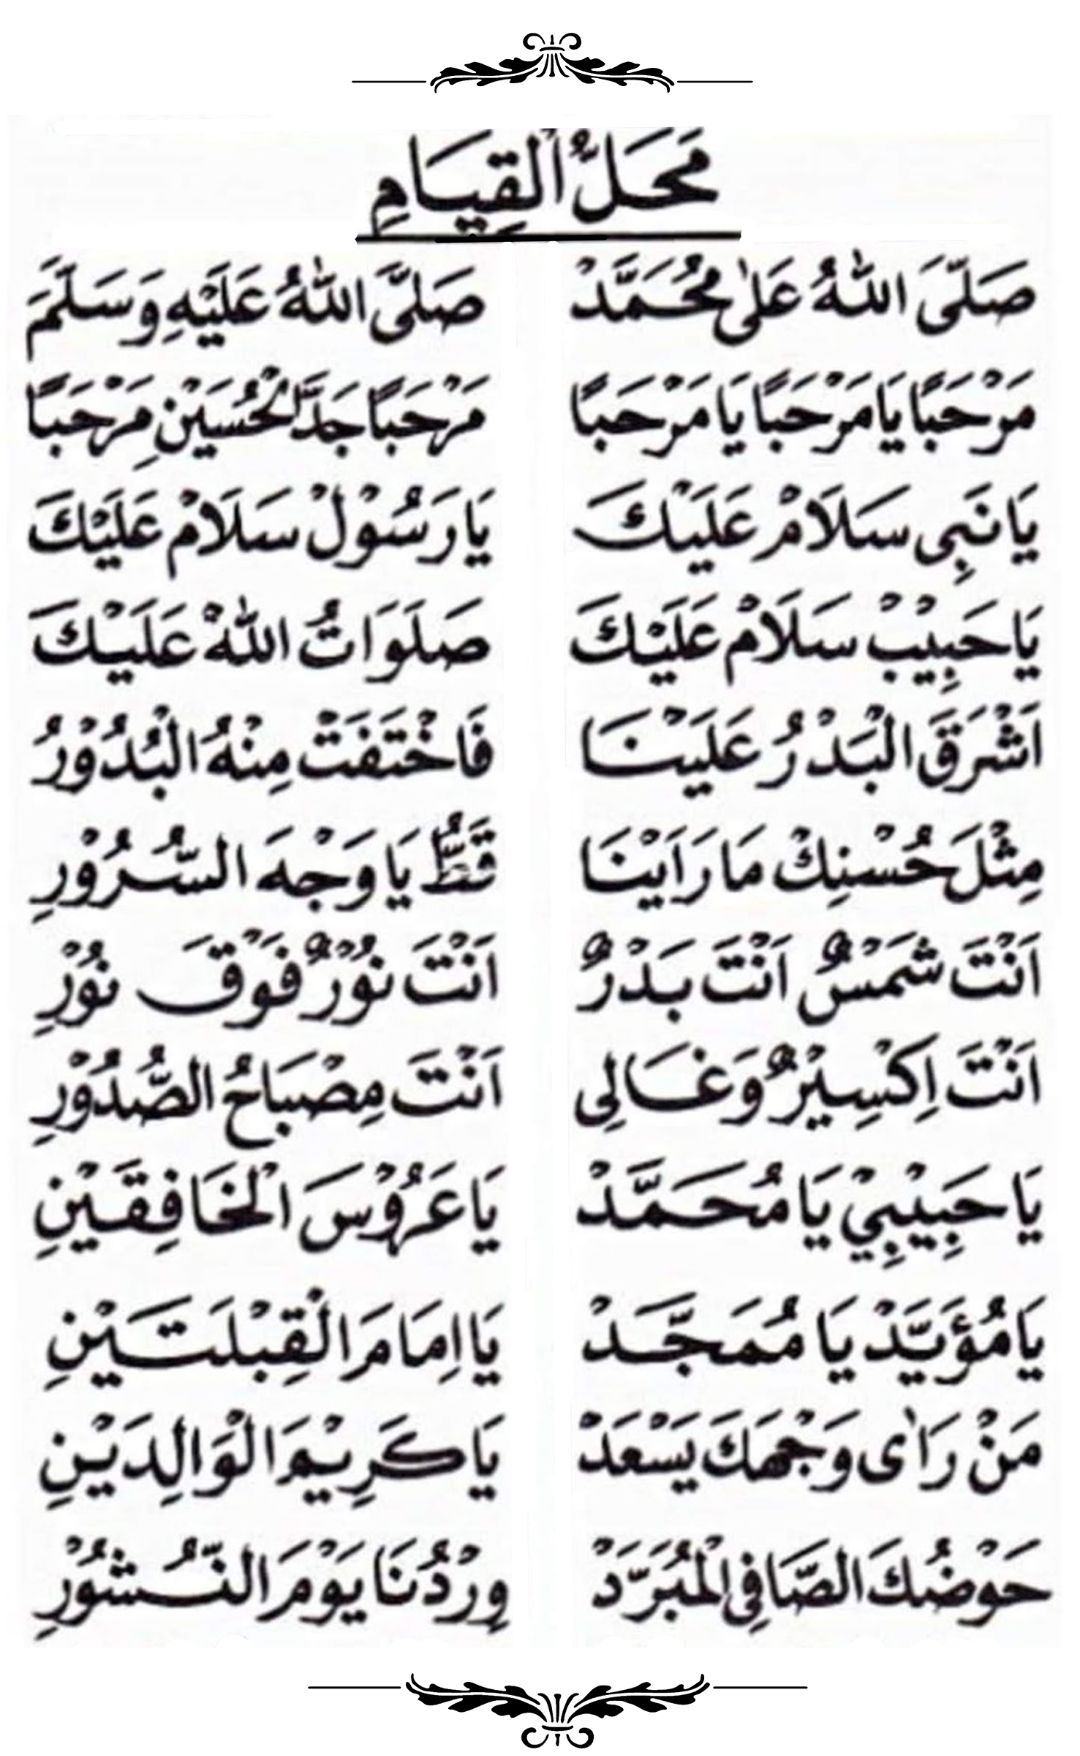 Ya Nabi Salam Alaika Lirik Arab Latin Dan Artinya Bisa Langsung